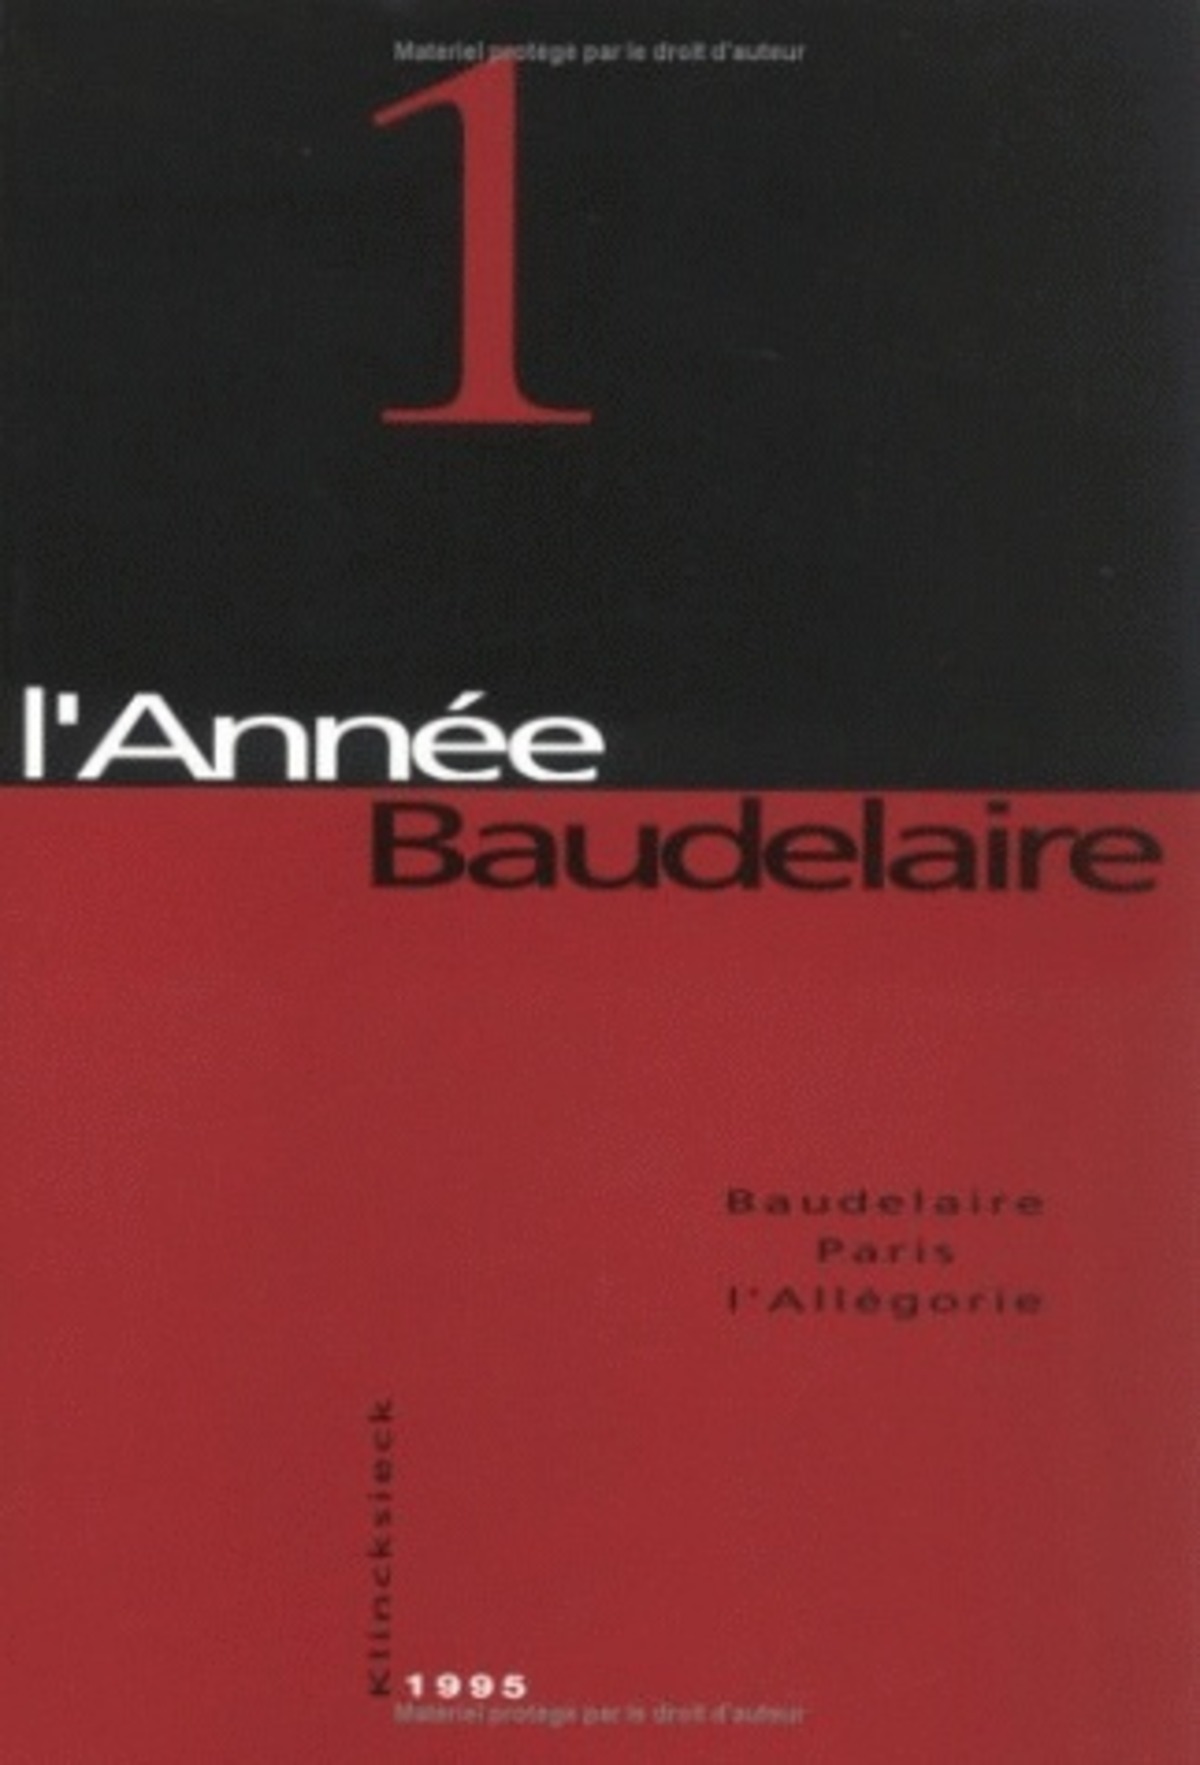 Baudelaire, Paris, l'Allégorie